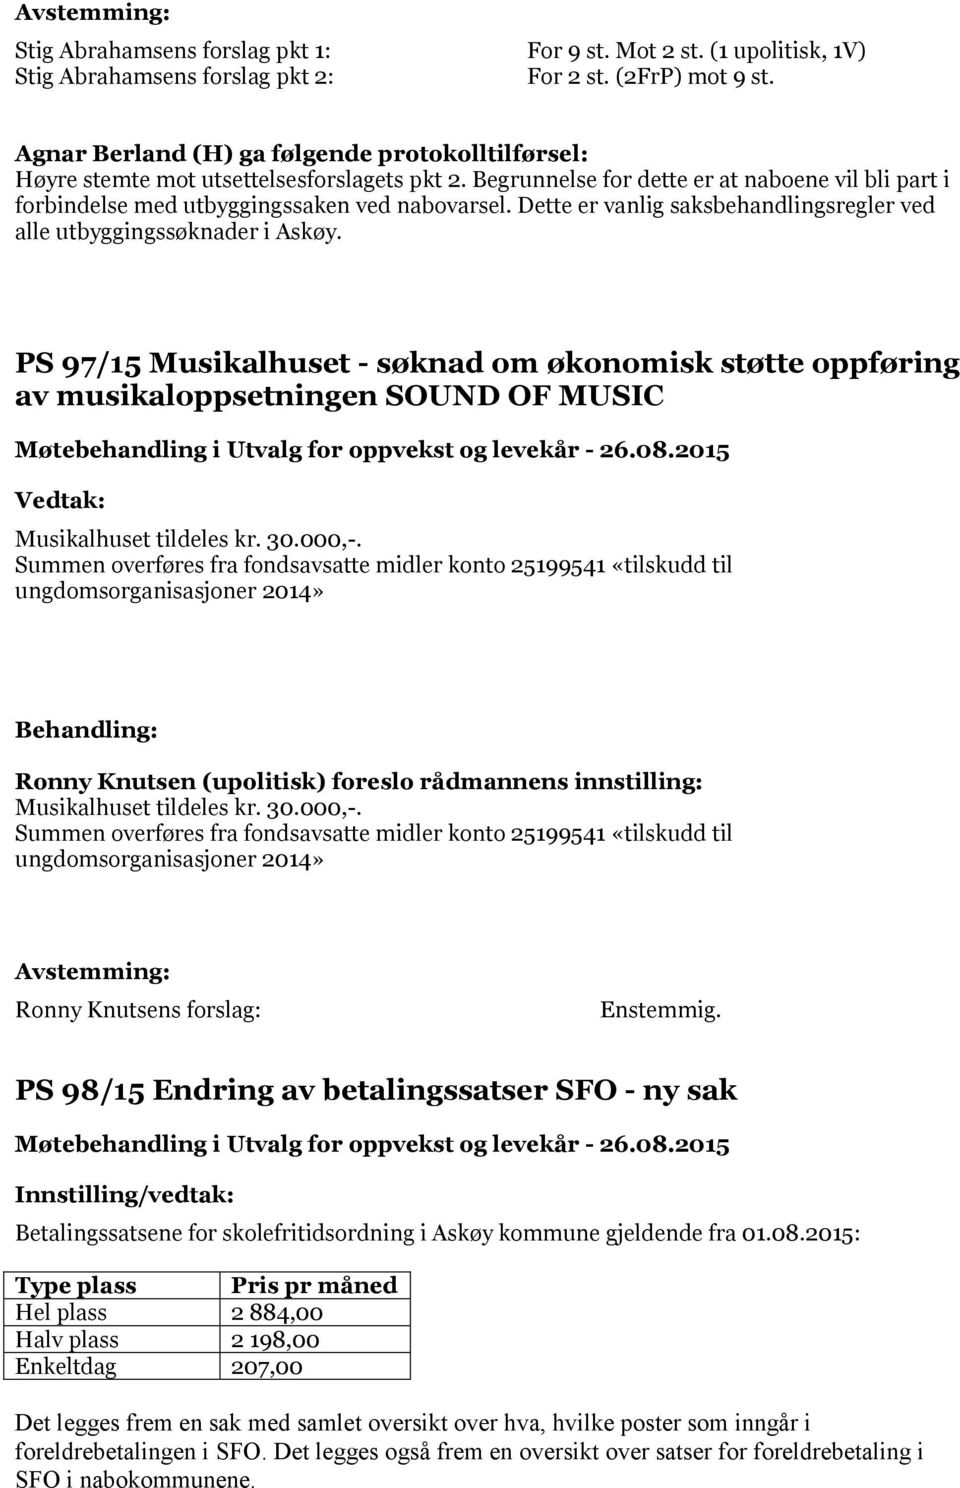 Dette er vanlig saksbehandlingsregler ved alle utbyggingssøknader i Askøy. PS 97/15 Musikalhuset - søknad om økonomisk støtte oppføring av musikaloppsetningen SOUND OF MUSIC Musikalhuset tildeles kr.